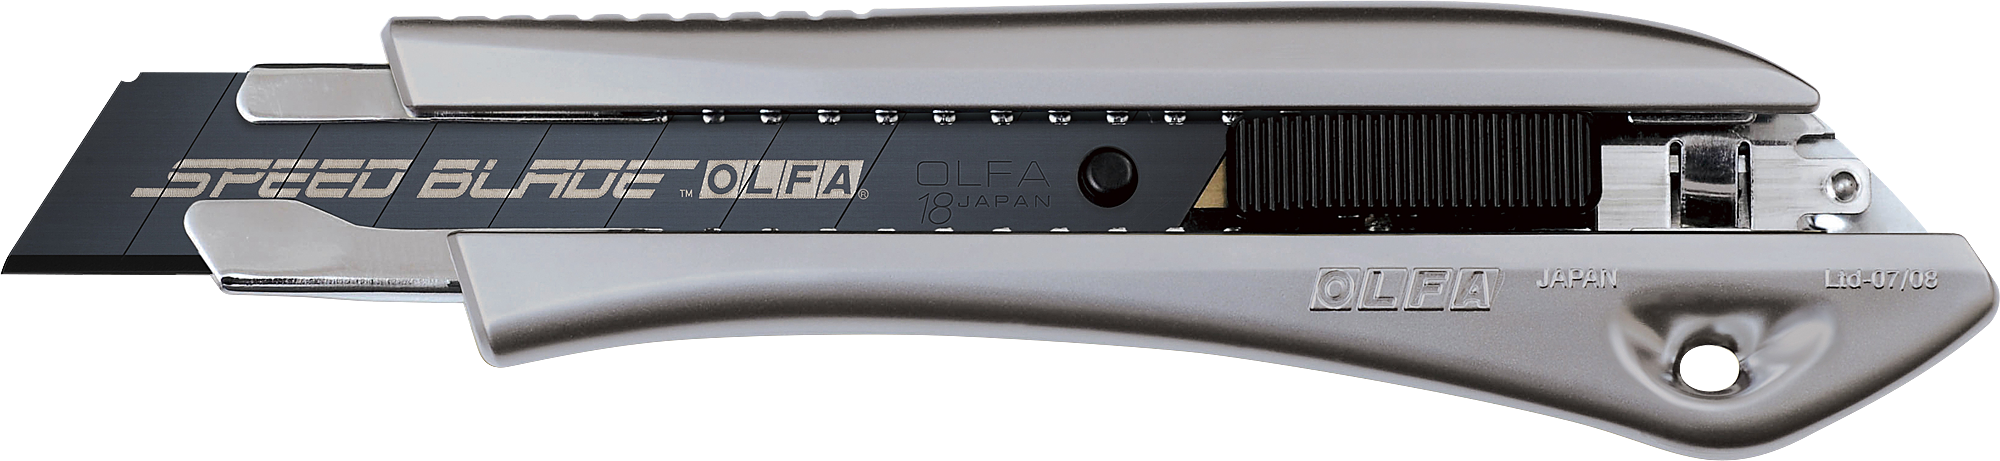 Лезвия olfa 18. Нож 18мм, автофиксатор Olfa. Нож Olfa с сегментированным лезвием 18 мм ol-Ltd-l-LFB. Olfa лезвия 18мм. Olfa ol-Ltd-al-LFB.